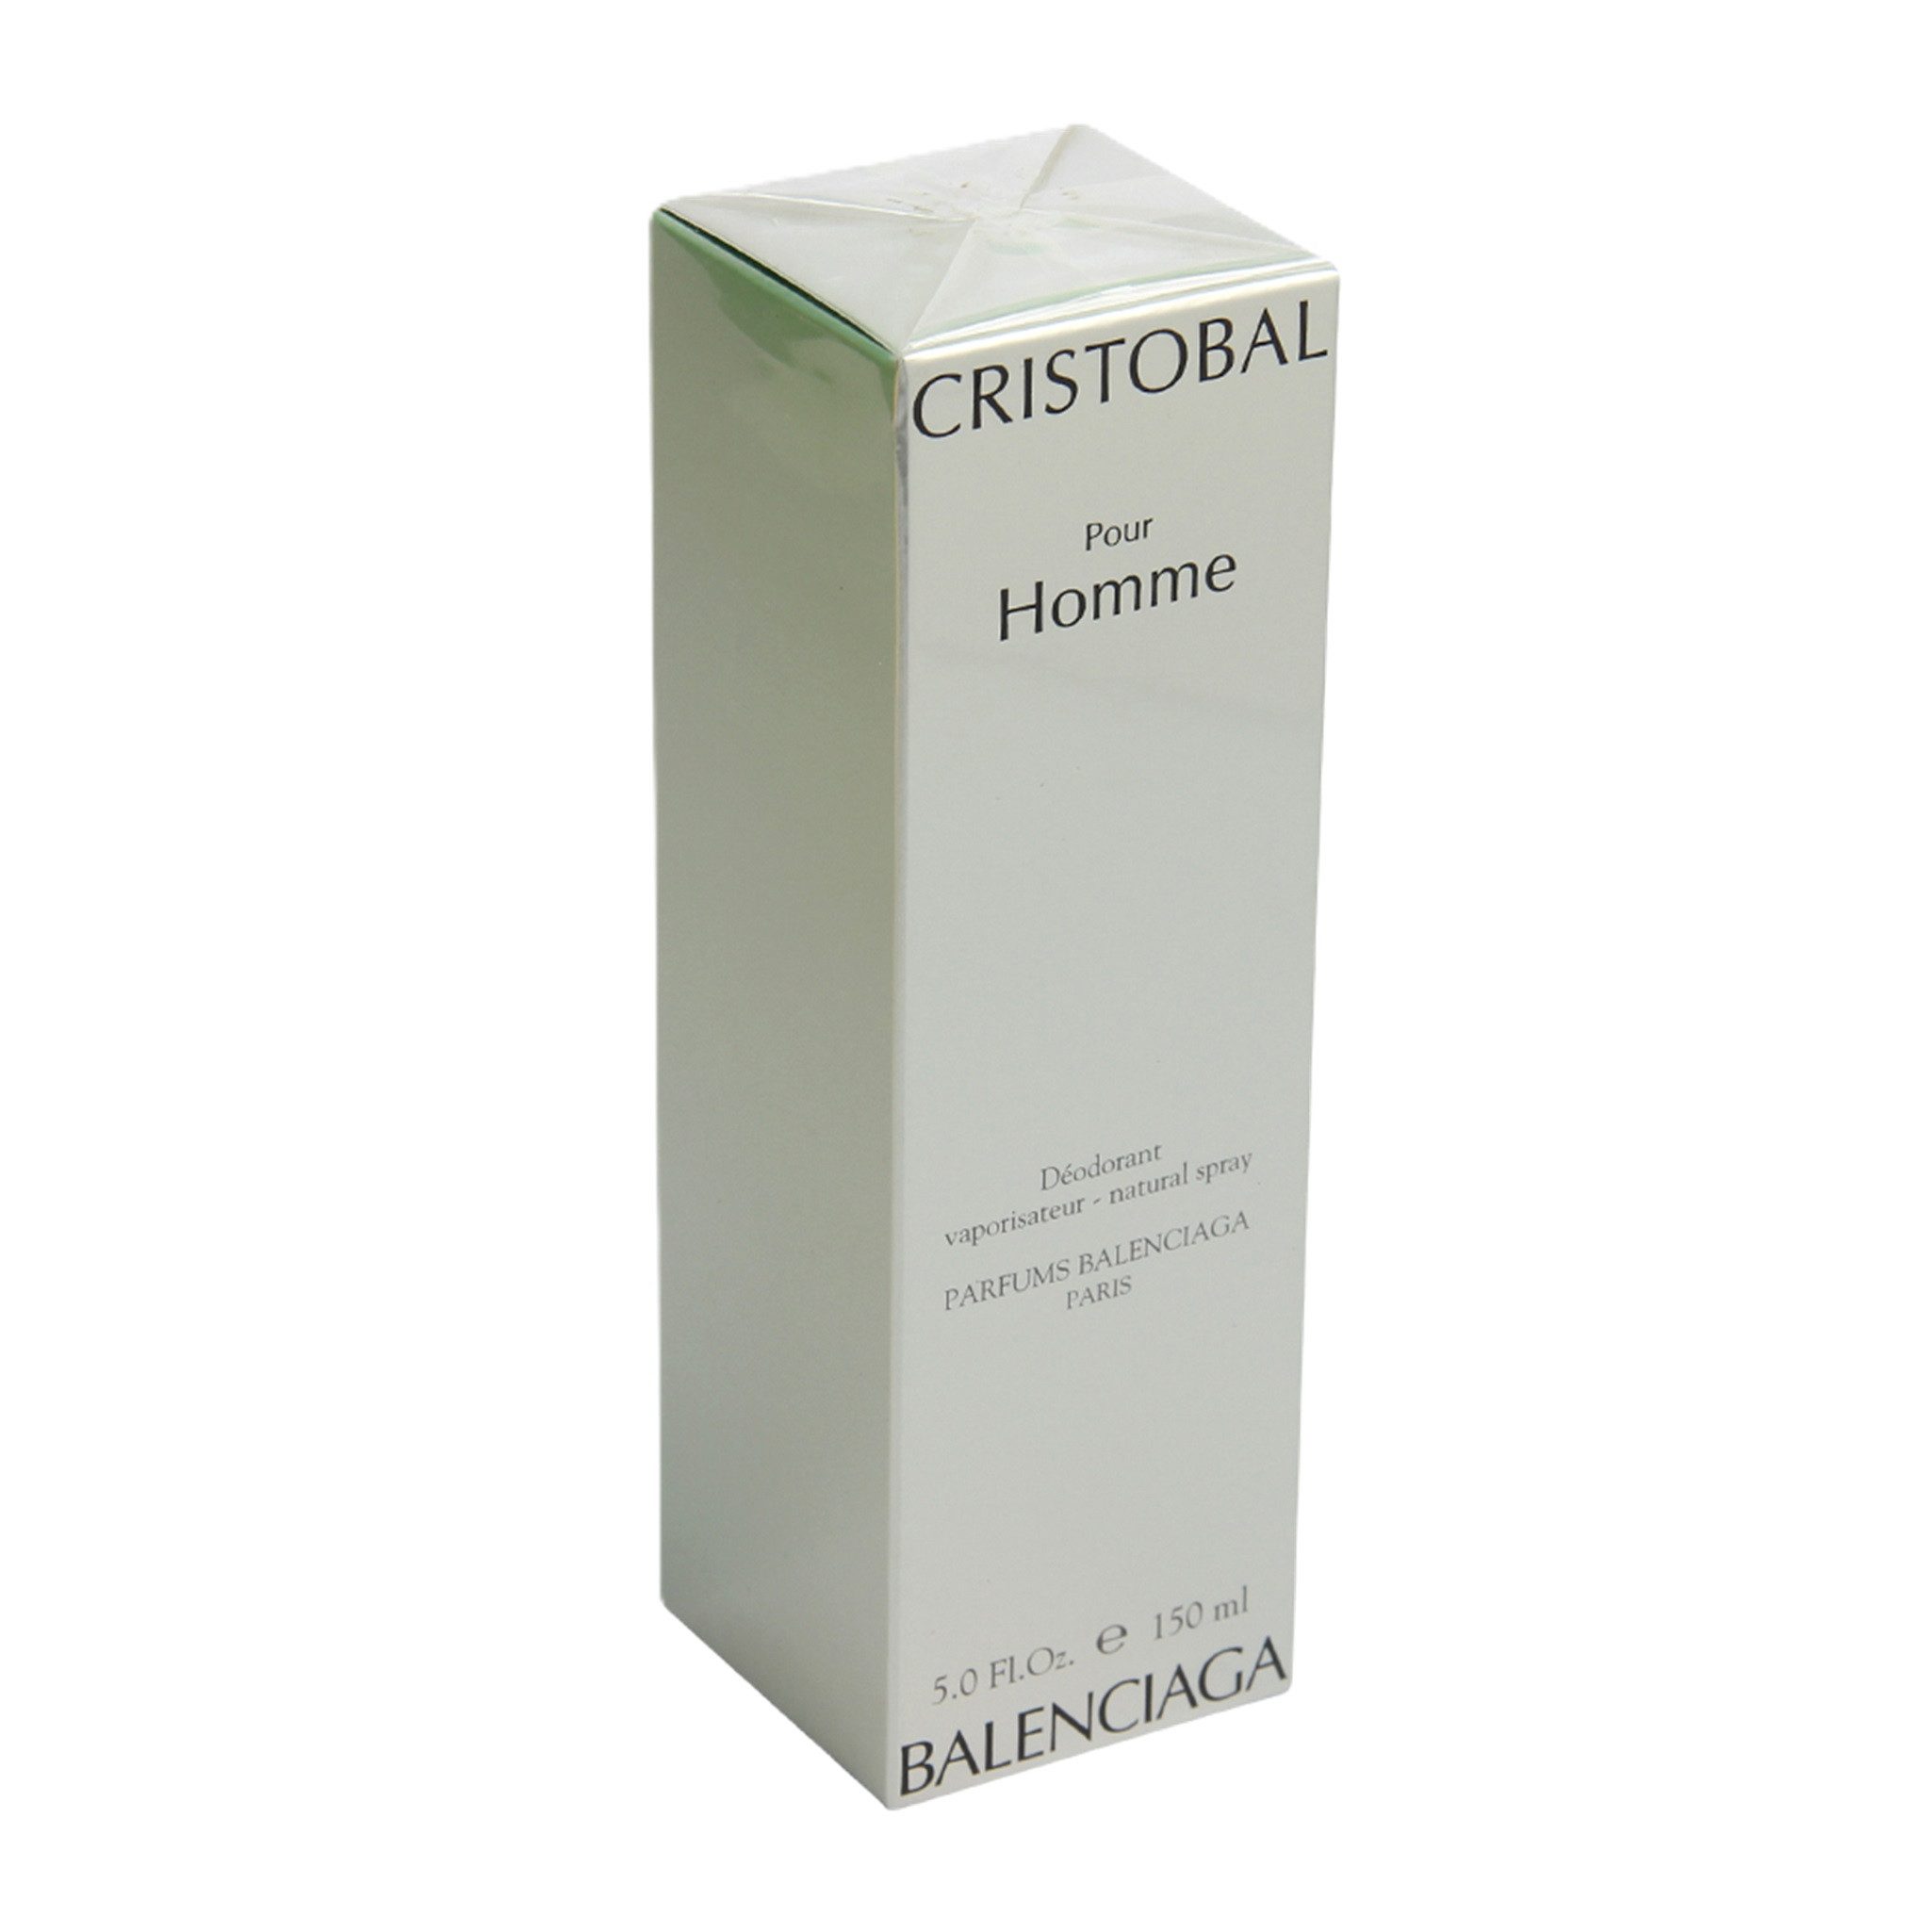 Balenciaga Eau de Toilette Balenciaga Cristobal Pour Homme Deodorant spray 150ml